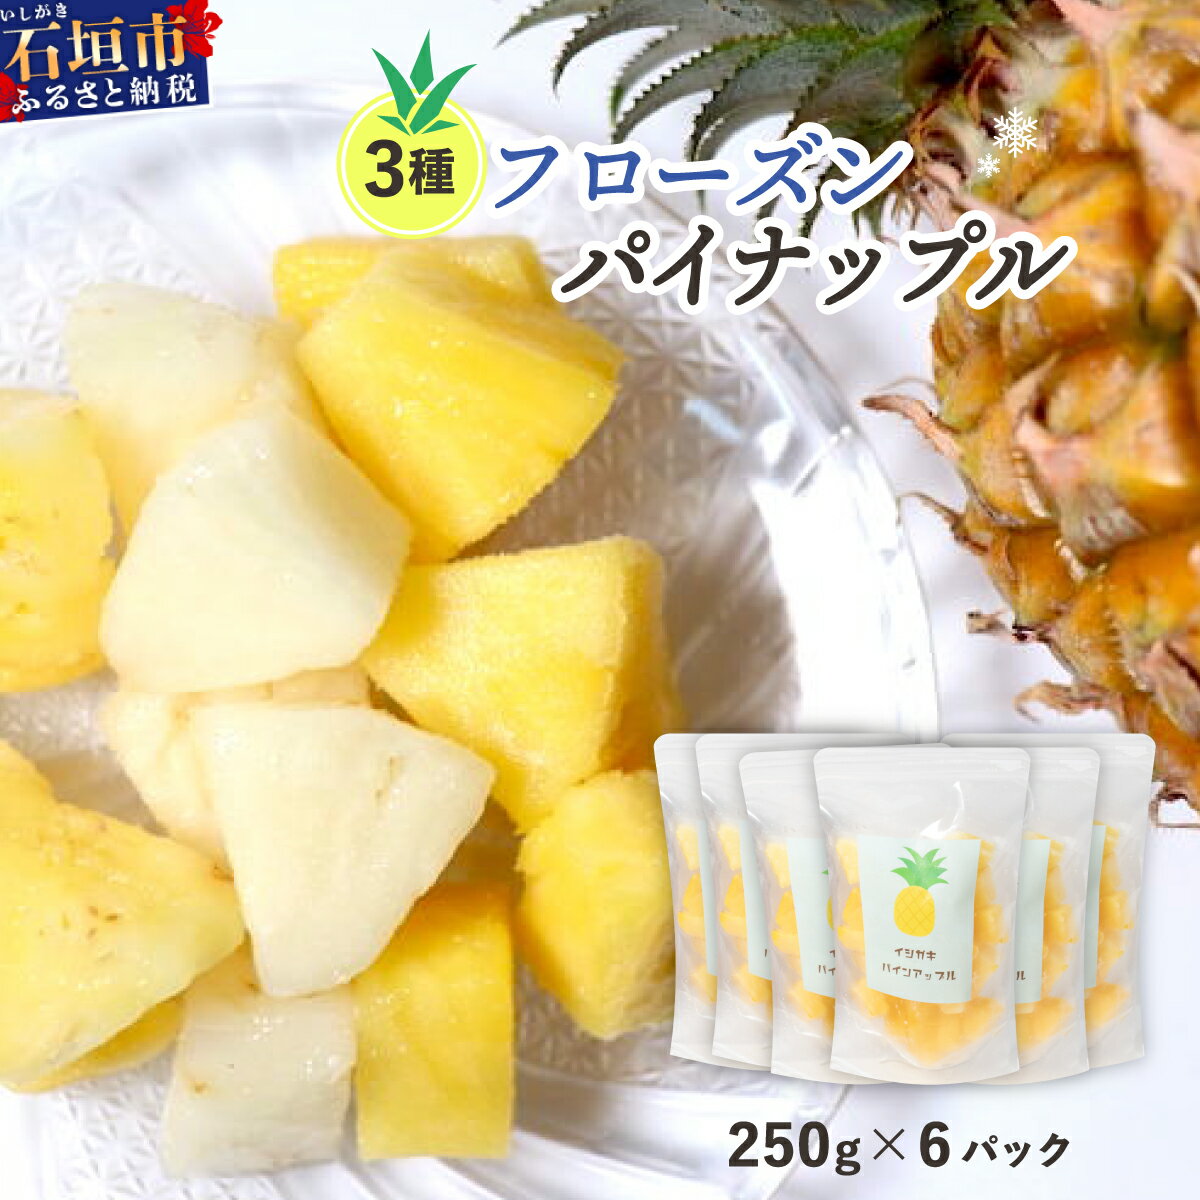 [ 予約受付 ]贅沢3種フローズンパイナップル1.5kg [ 5月以降順次発送 ] | 沖縄県 石垣市 果物 パイナップル 冷凍 パイン フローズン 送料無料 EF-6